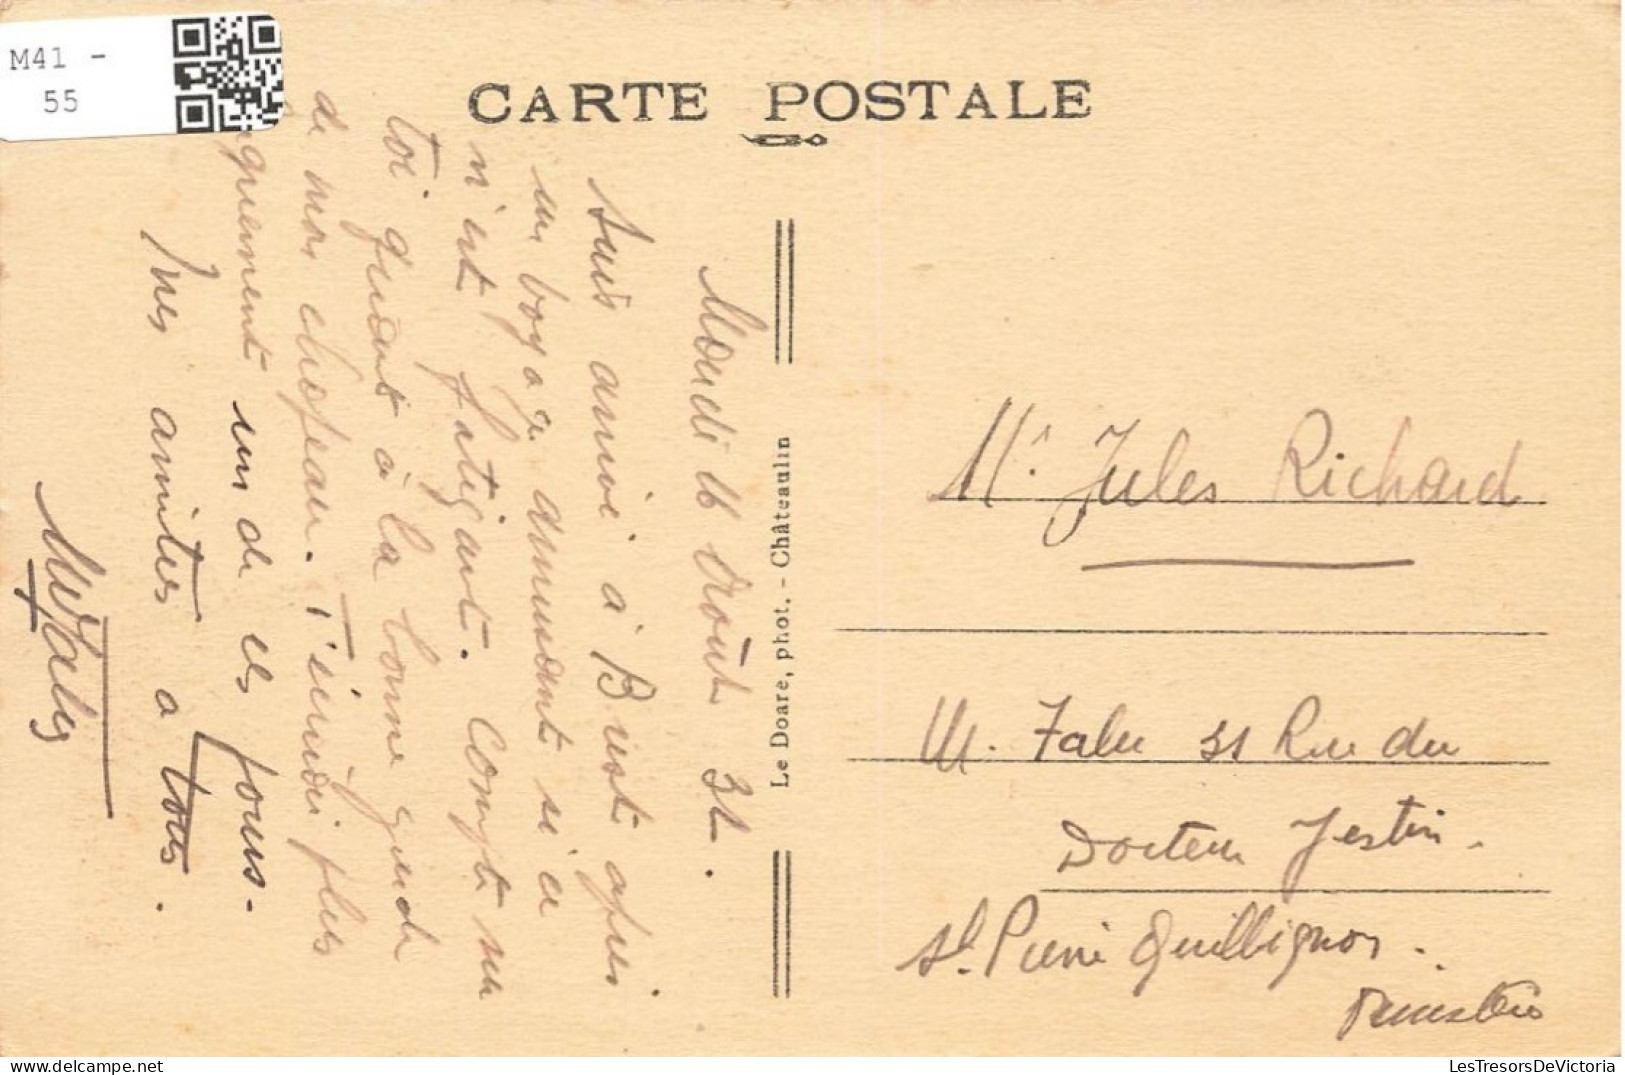 FRANCE - Plougastel Daoulas - Vue Générale Du Pont Albert Louppe -  Carte Postale Ancienne - Plougastel-Daoulas